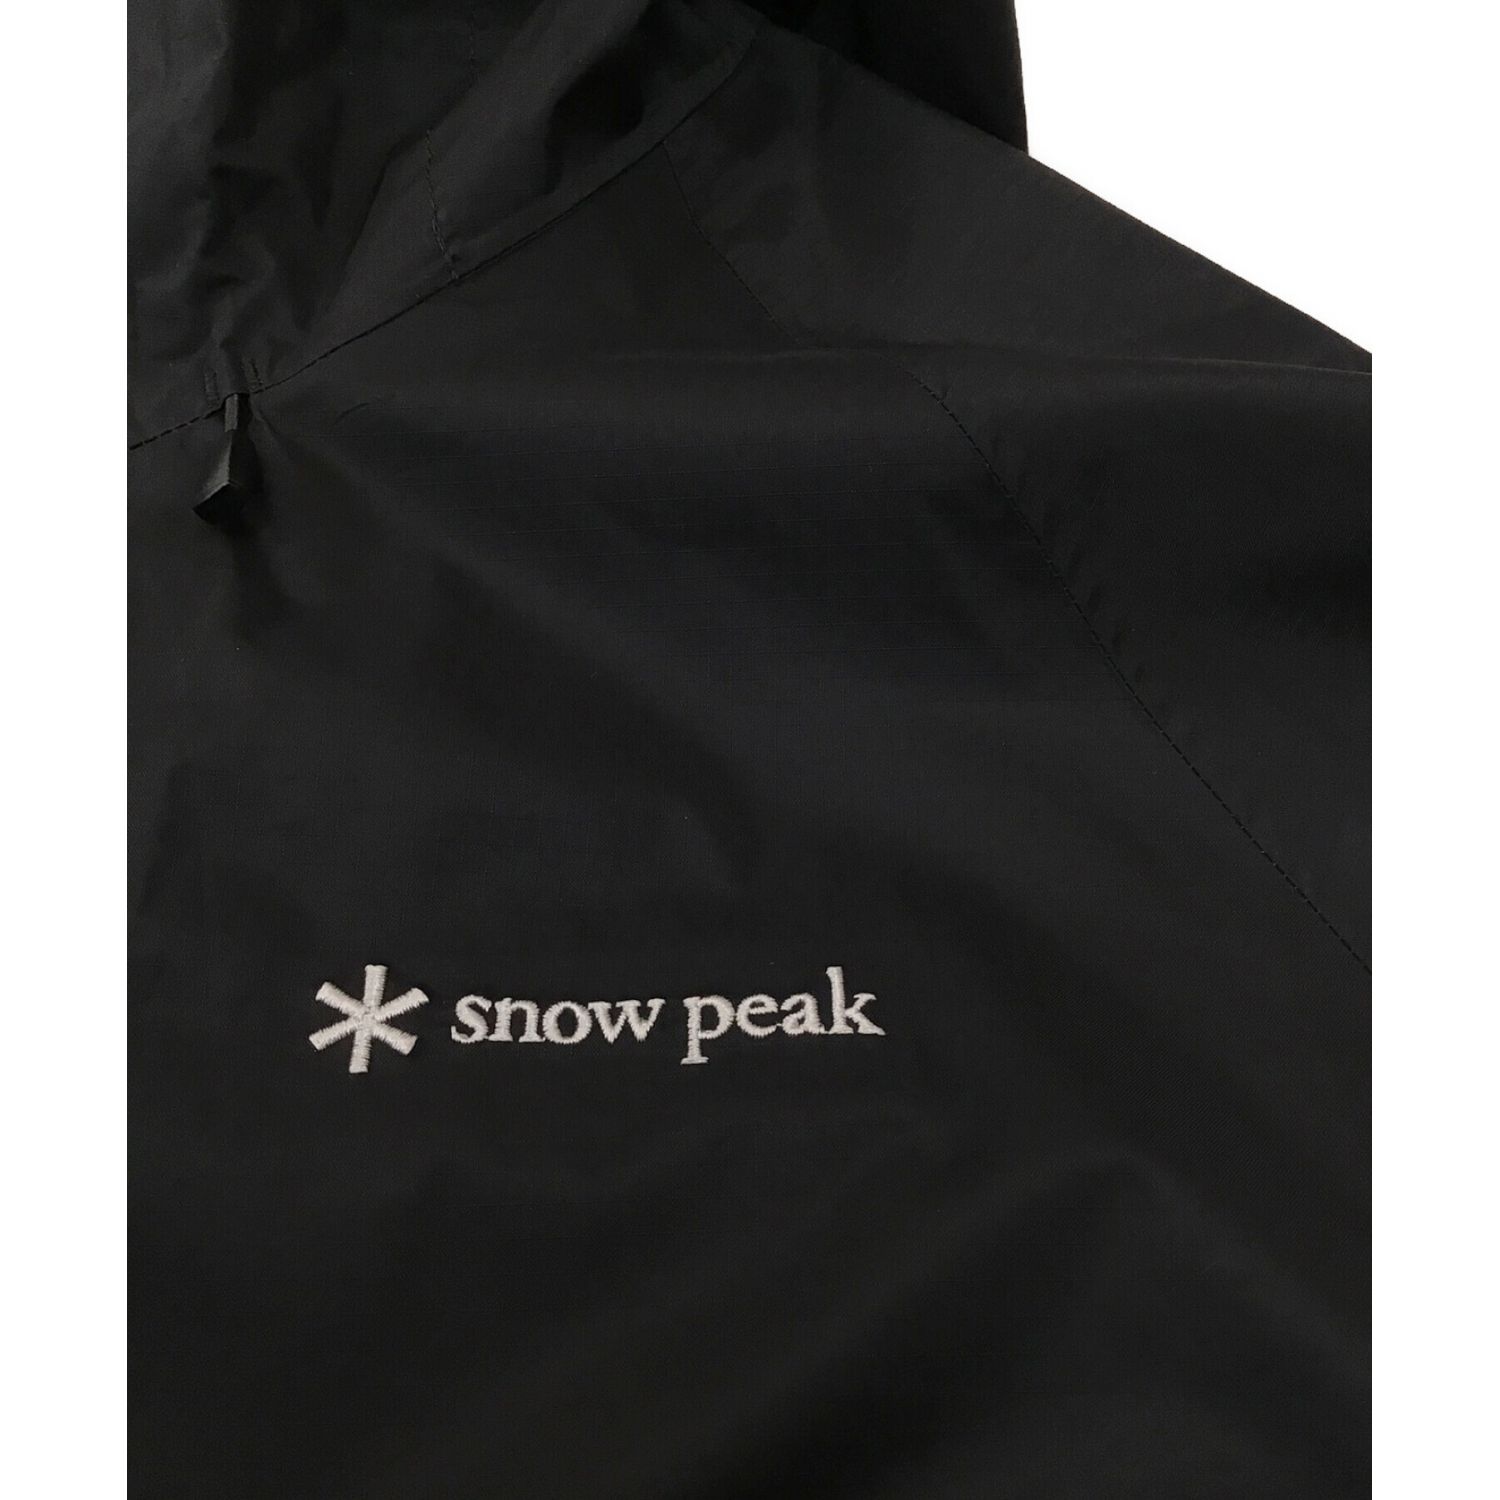 Snow peak (スノーピーク) 2.5Lレインジャケット ブラック サイズ:L